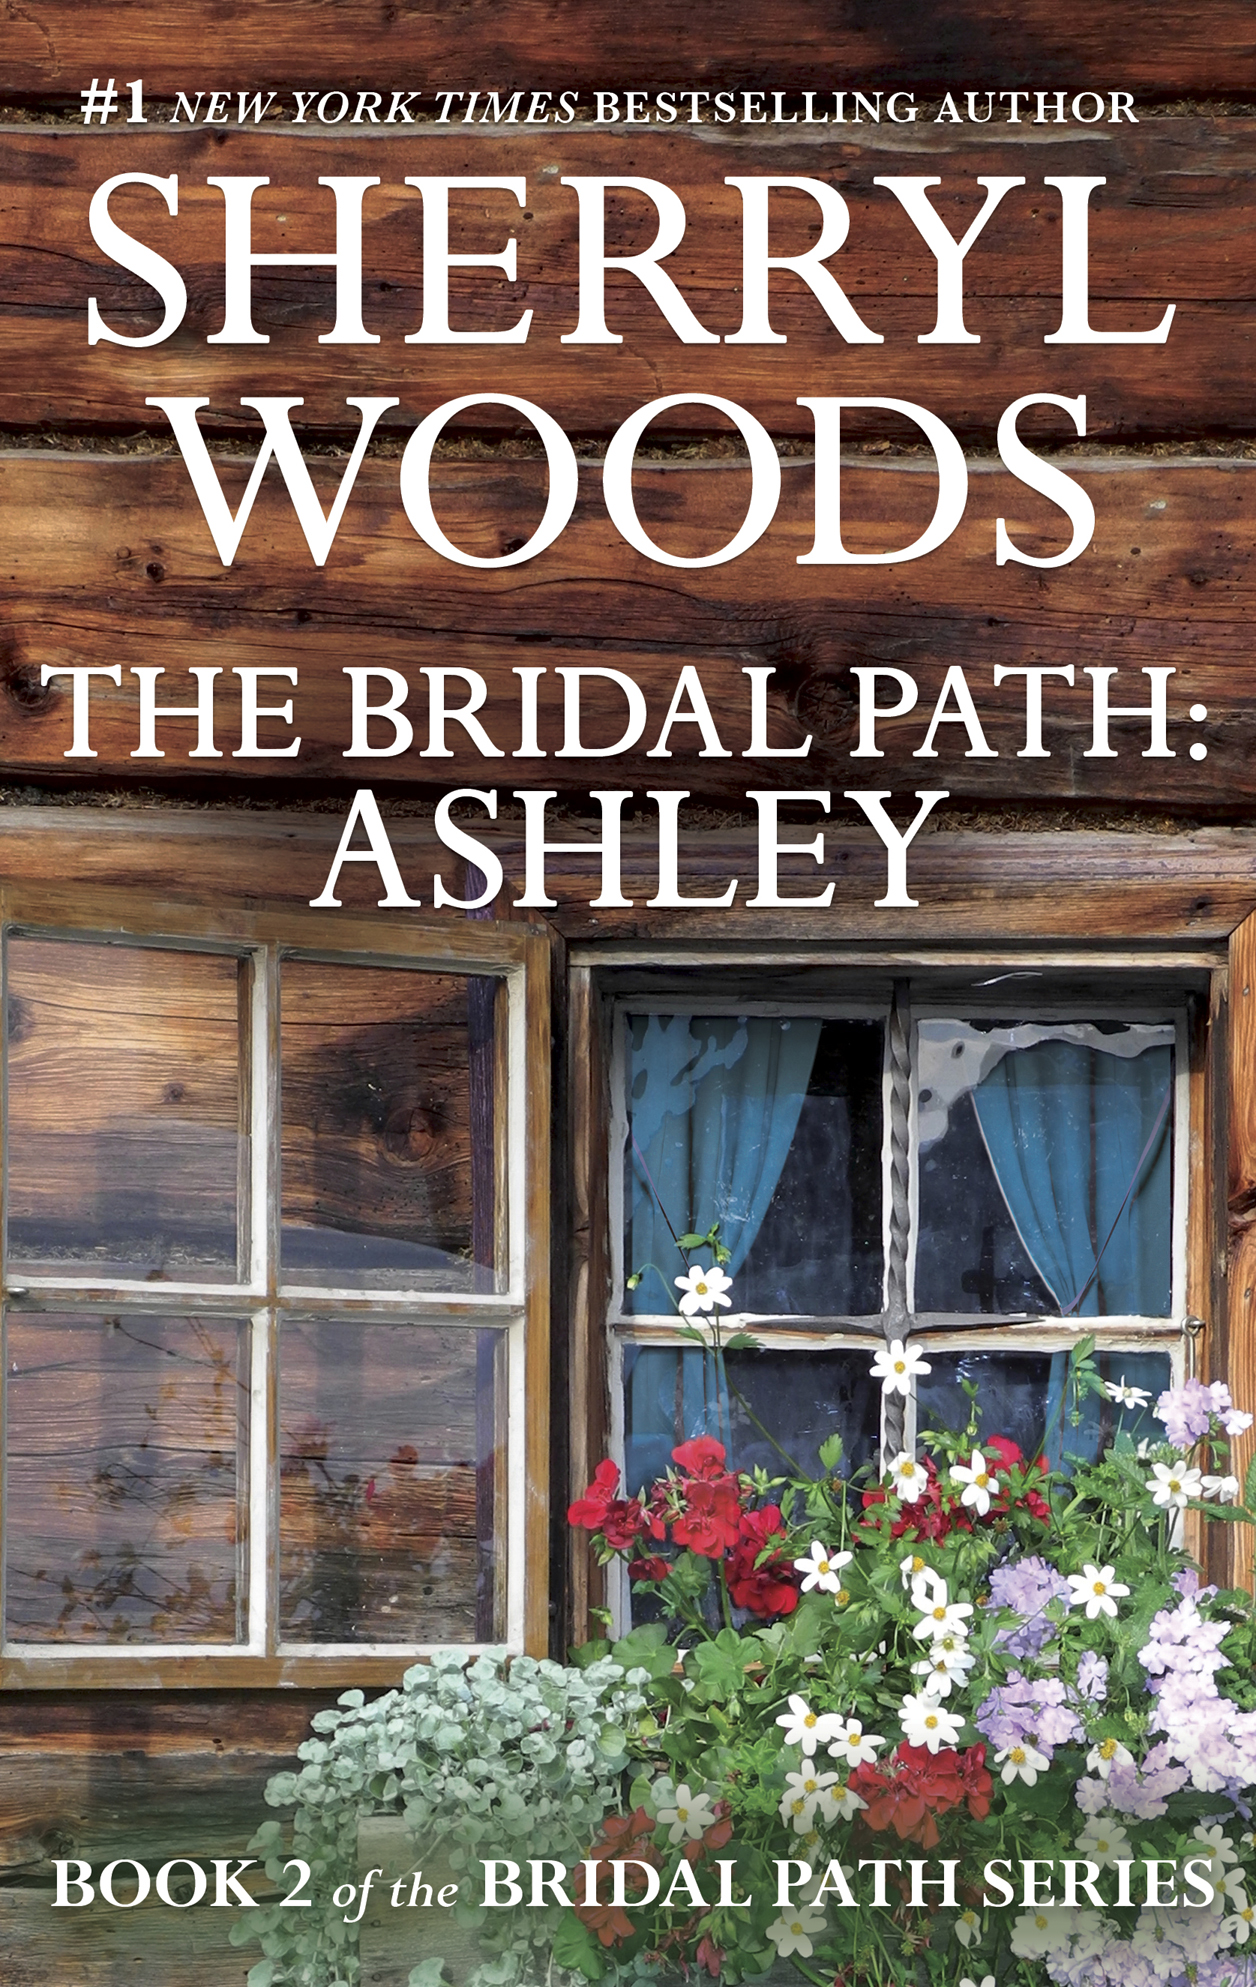 The Bridal Path: Ashley (1996) by Sherryl Woods